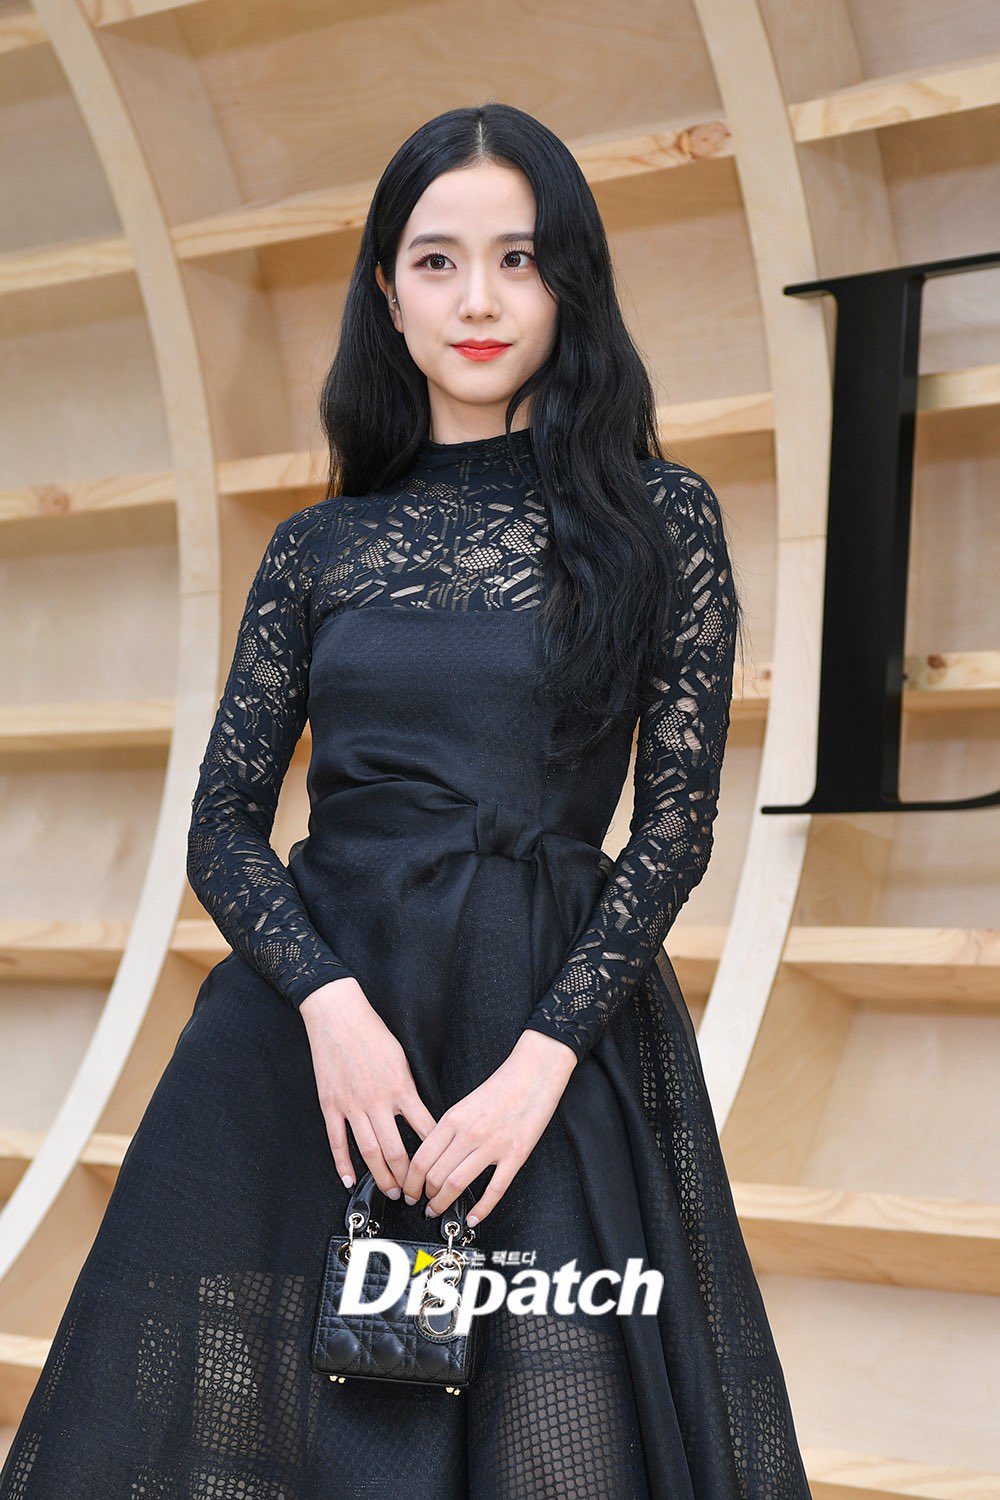 Jisoo xinh ma mị đúng chất đại sứ Dior nhưng vẫn khiến netizen tranh cãi  gay gắt vì 1 vấn đề